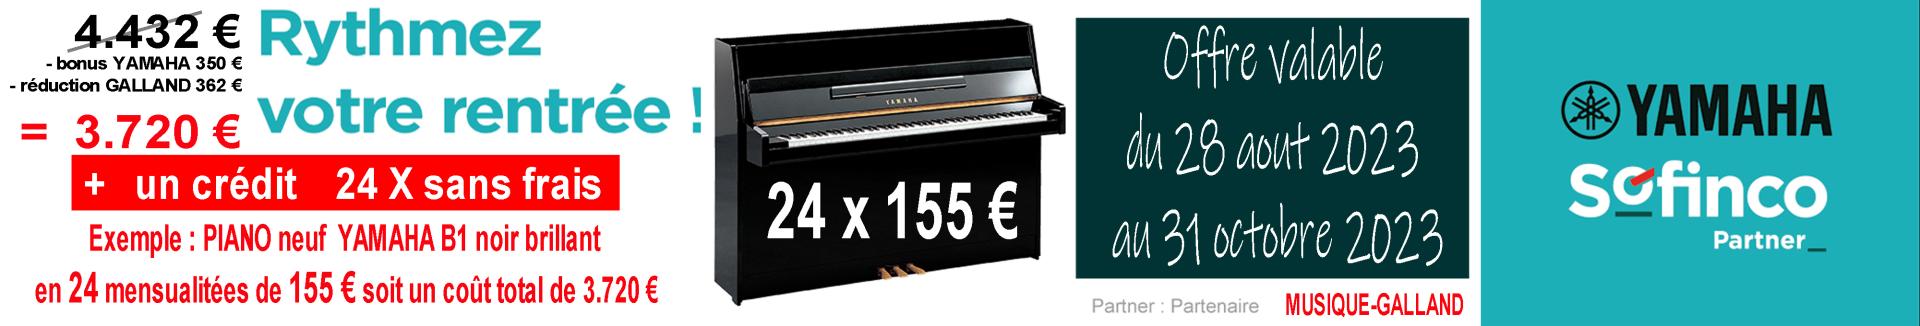 Yamaha 2000x340 piano 12 xgt galland bonus